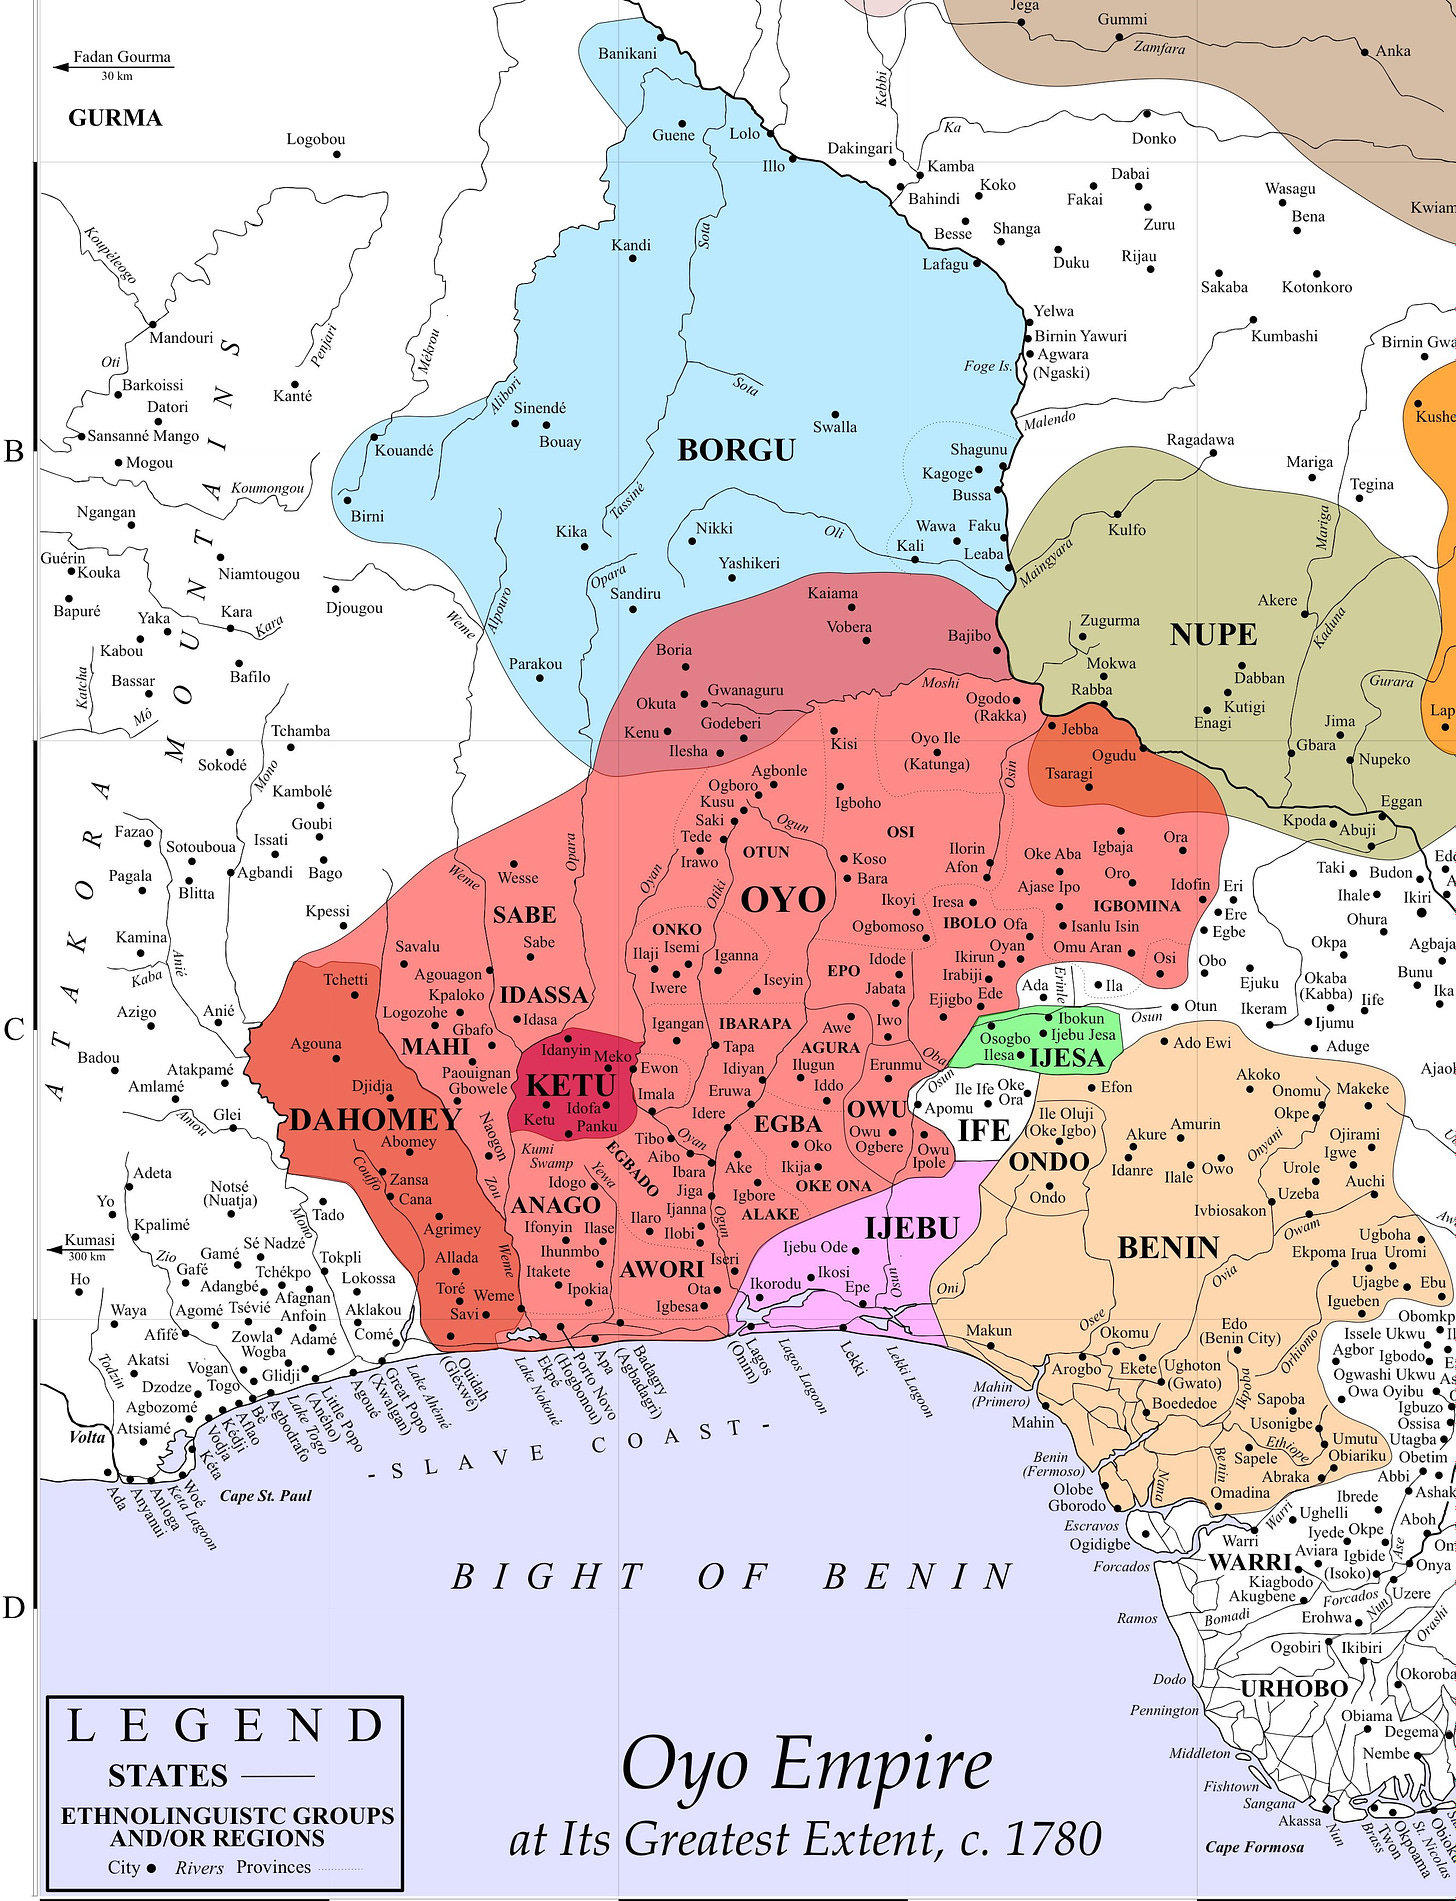 Oyo Empire - Wikipedia